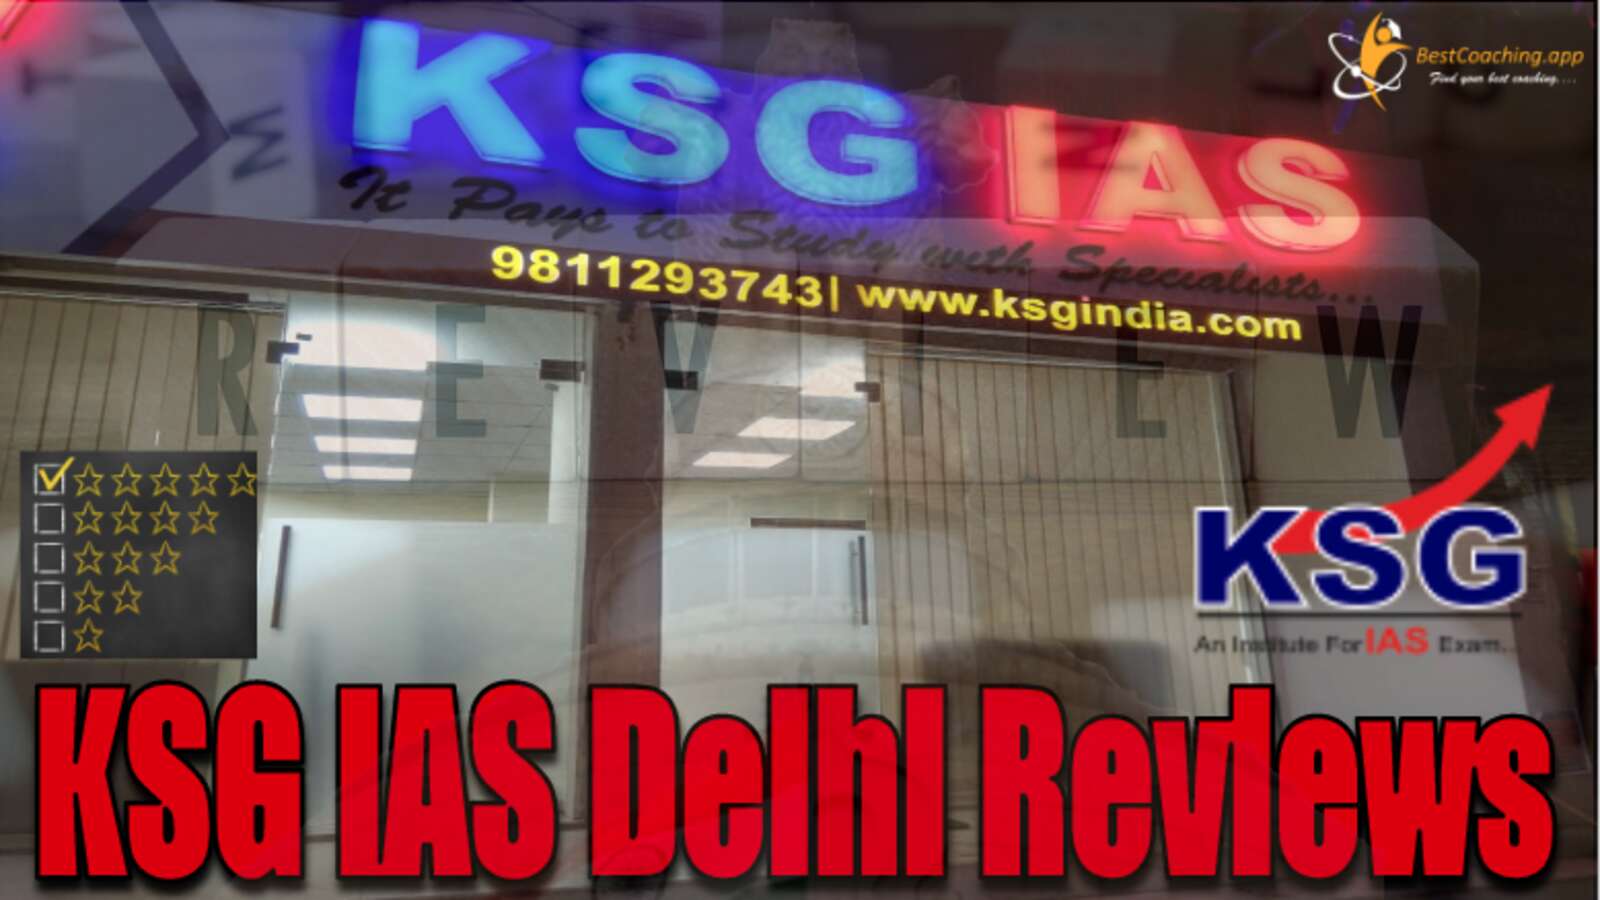 KSG IAS Delhi Review